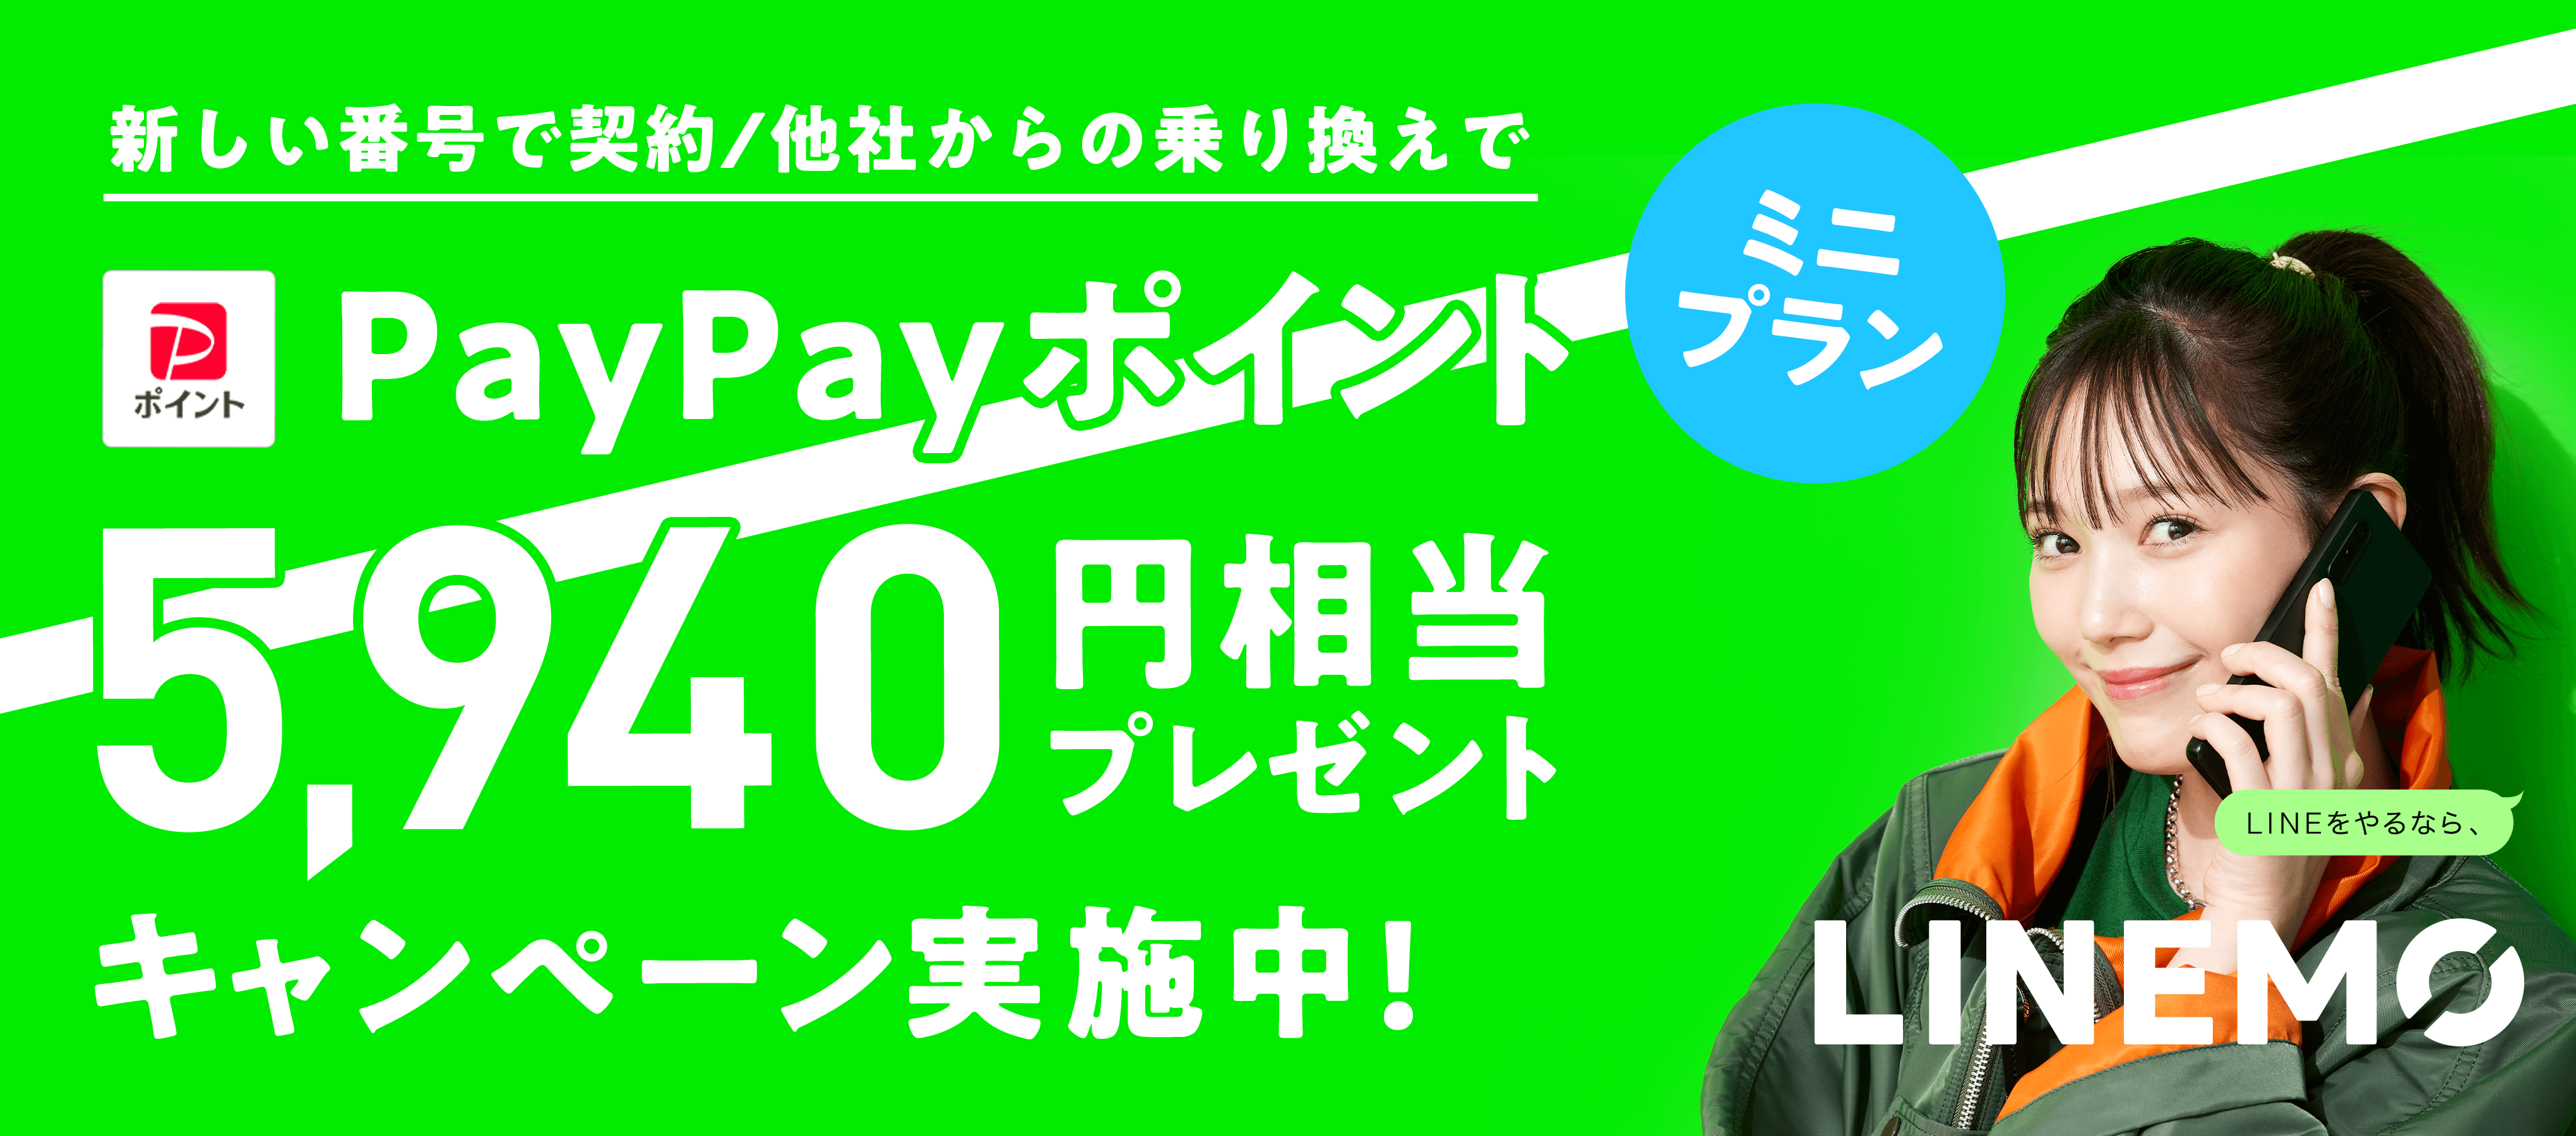 新しい番号で契約/他社からの乗り換えで ミニプラン PayPayポイント 5,940円相当プレゼントキャンペーン実施中！